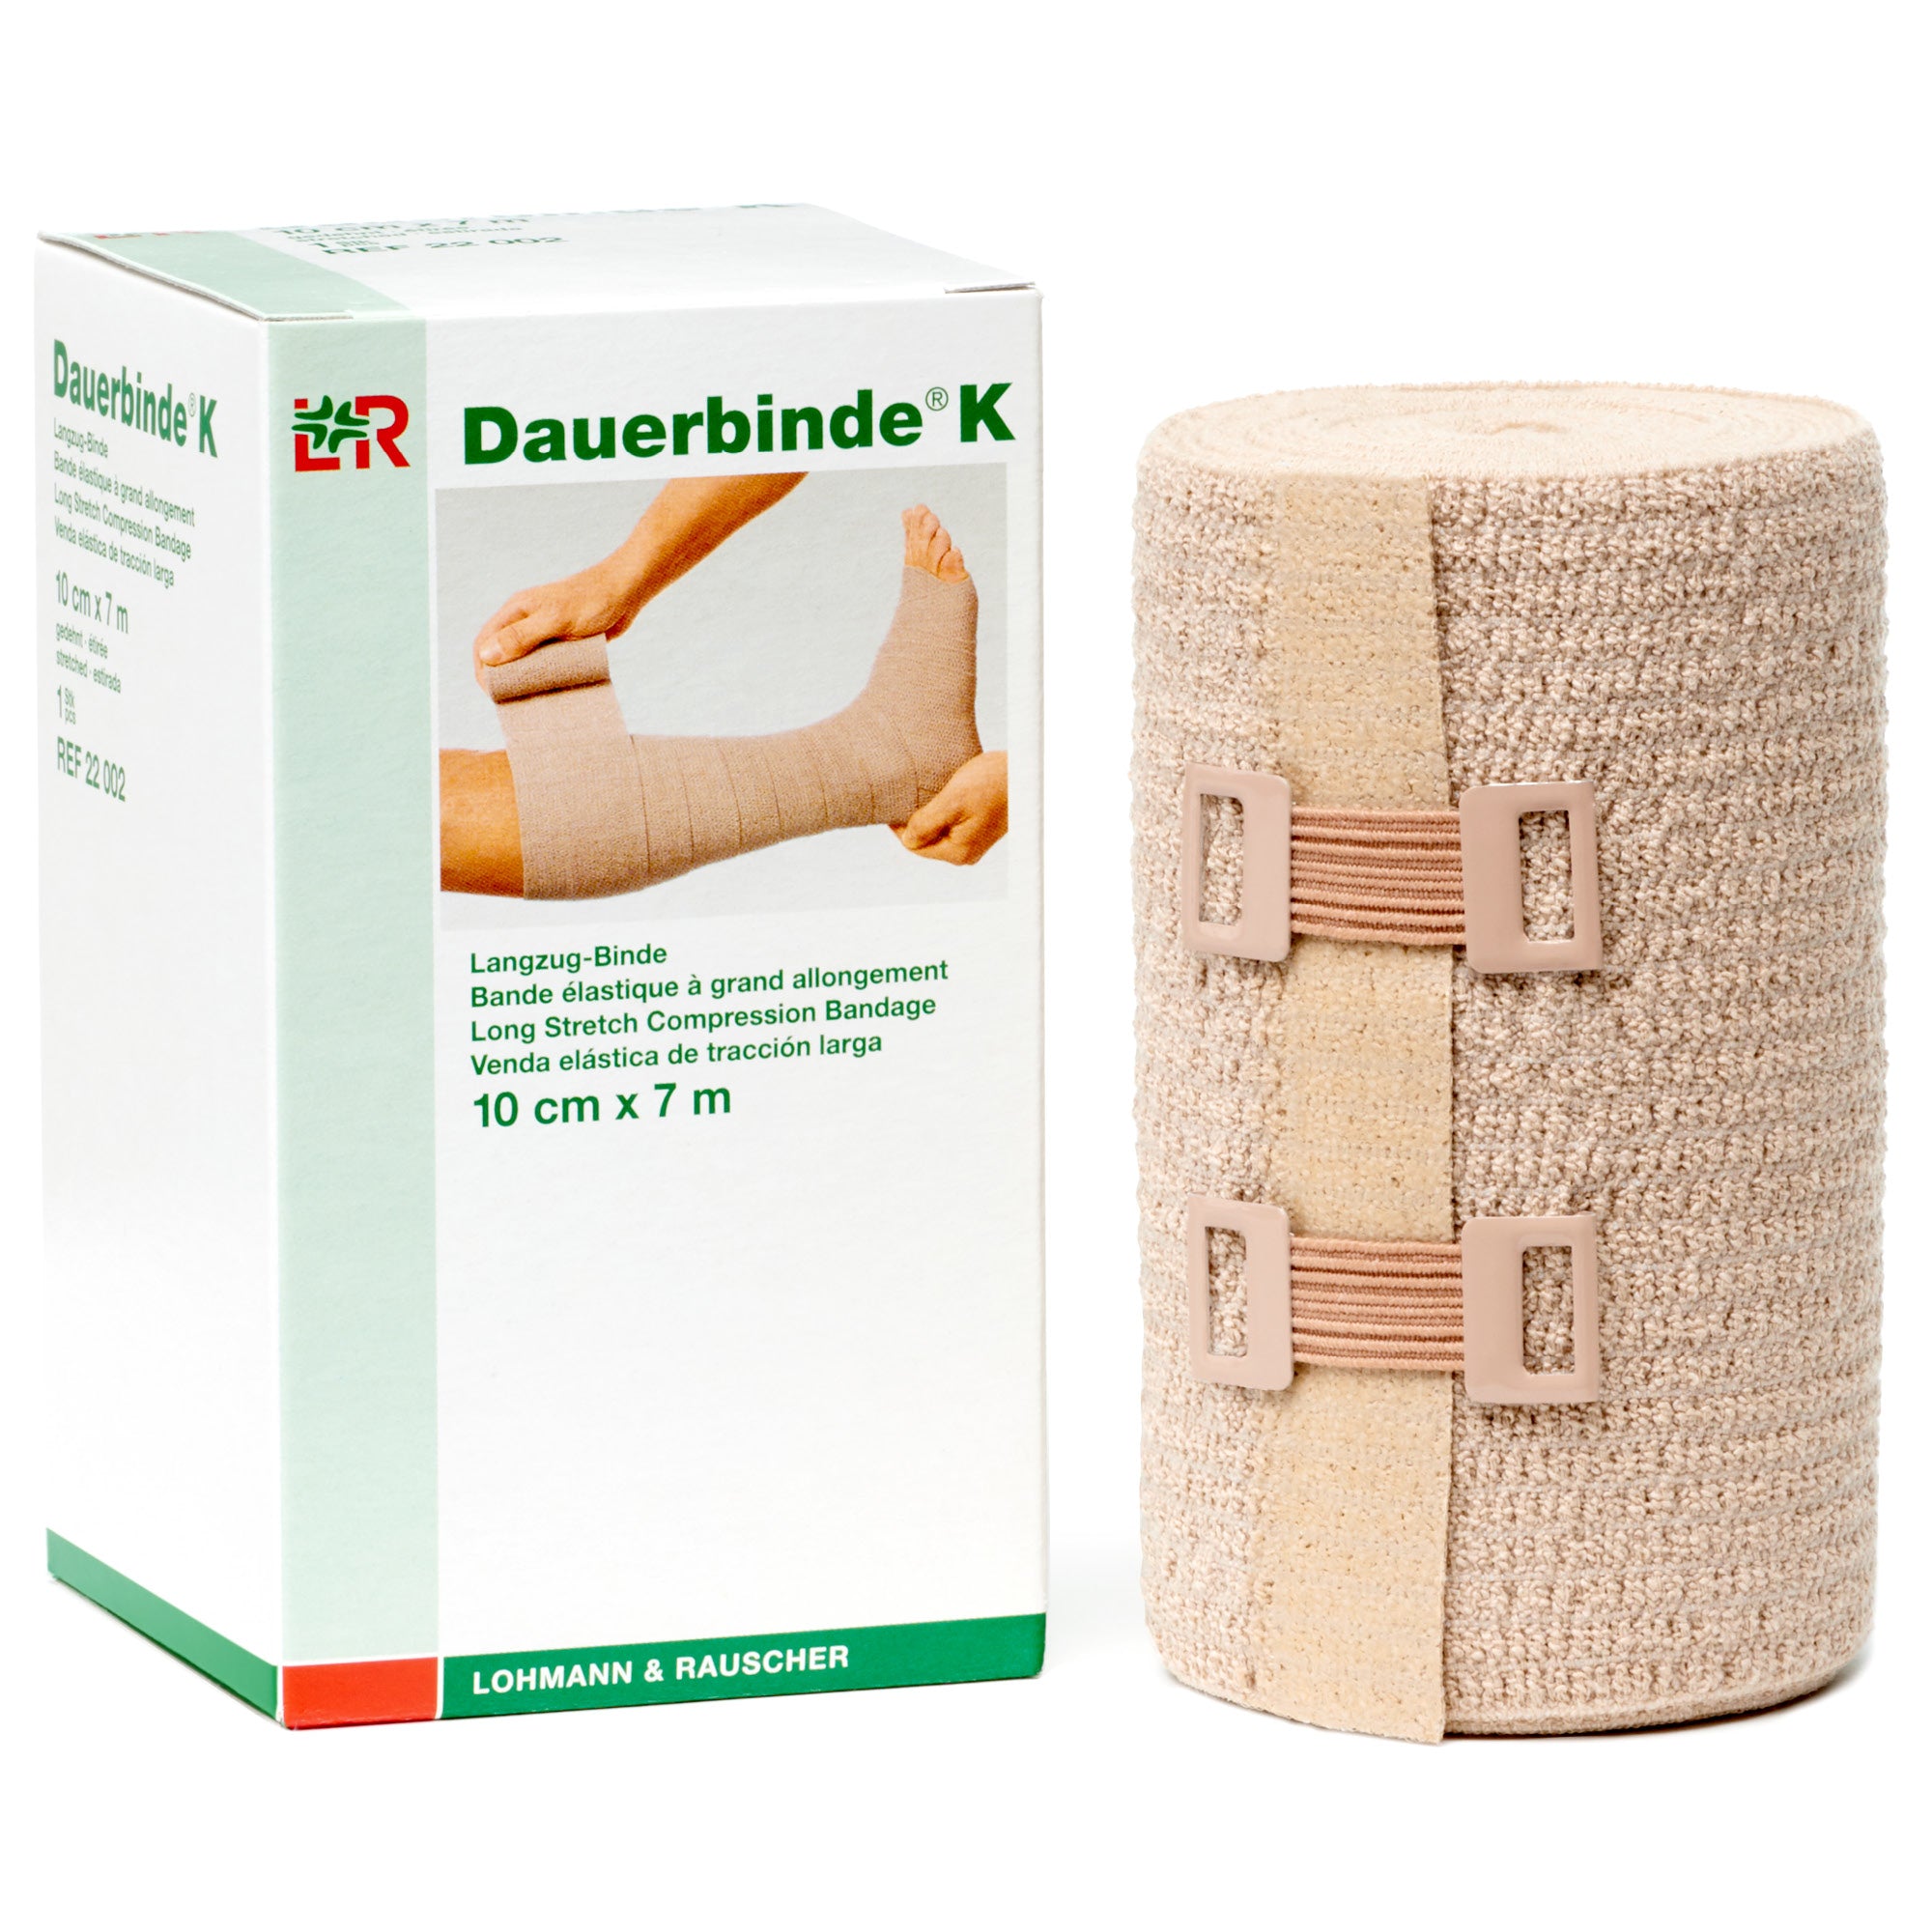 Jumbo Size Body Wrap Elastic Bandages - Ace Bandage with Velco - 8